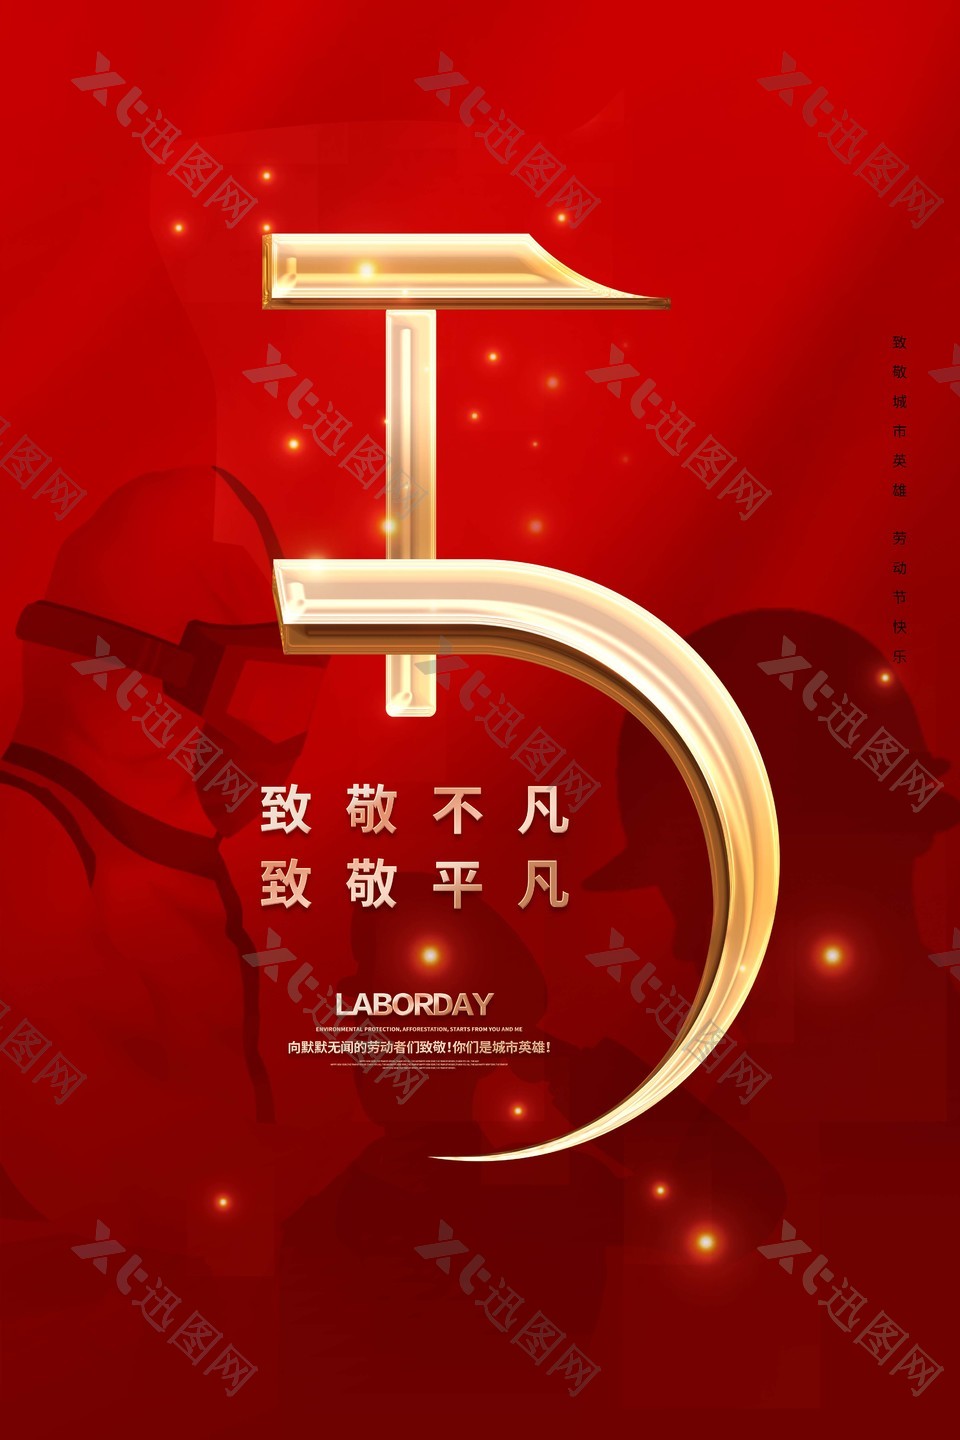 经典红色五一劳动节快乐海报设计素材